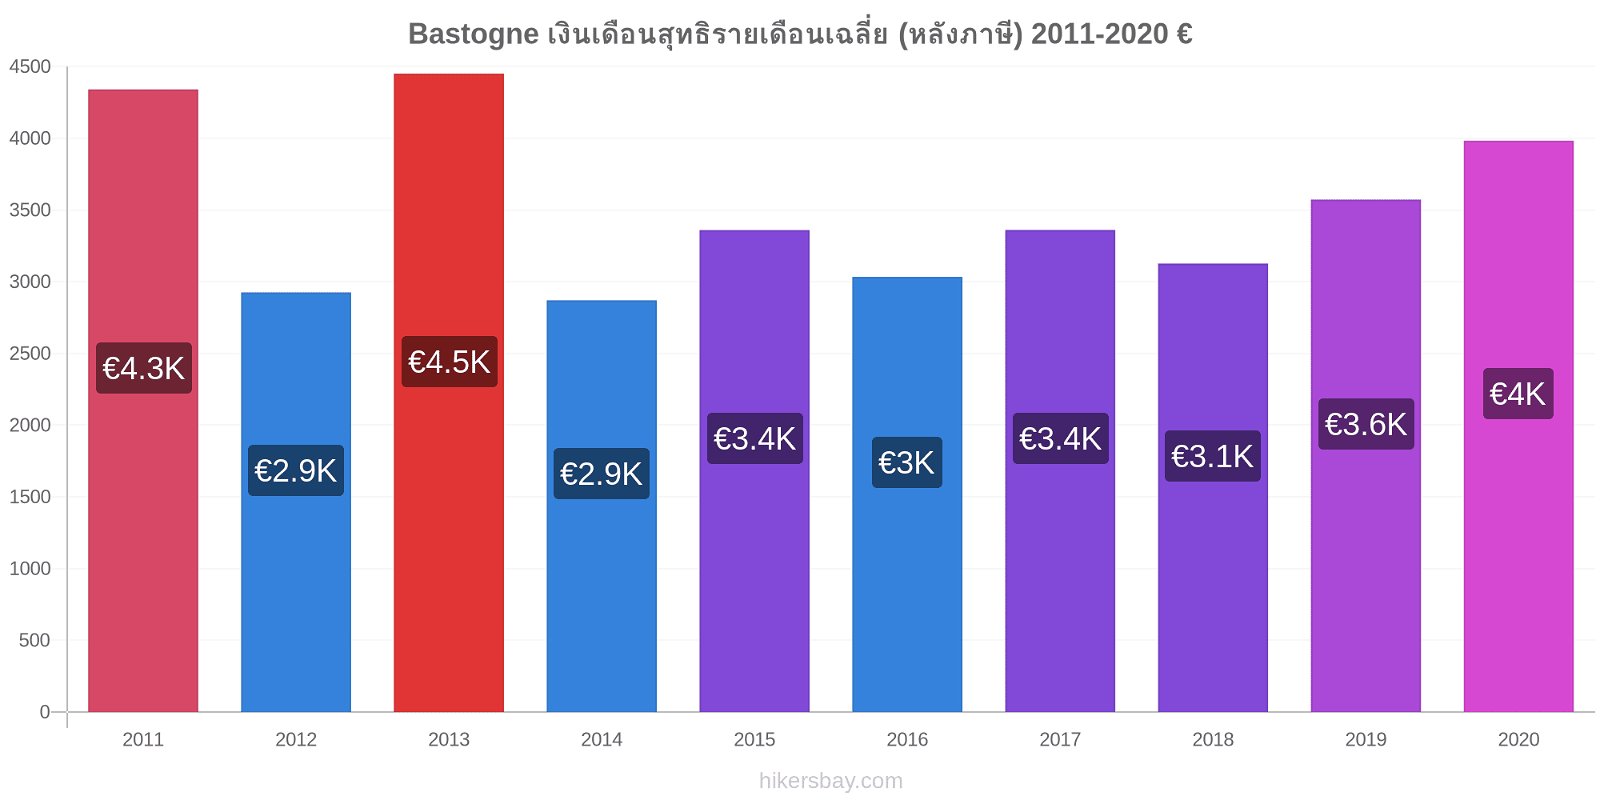 Bastogne การเปลี่ยนแปลงราคา เงินเดือนสุทธิรายเดือนเฉลี่ย (หลังภาษี) hikersbay.com